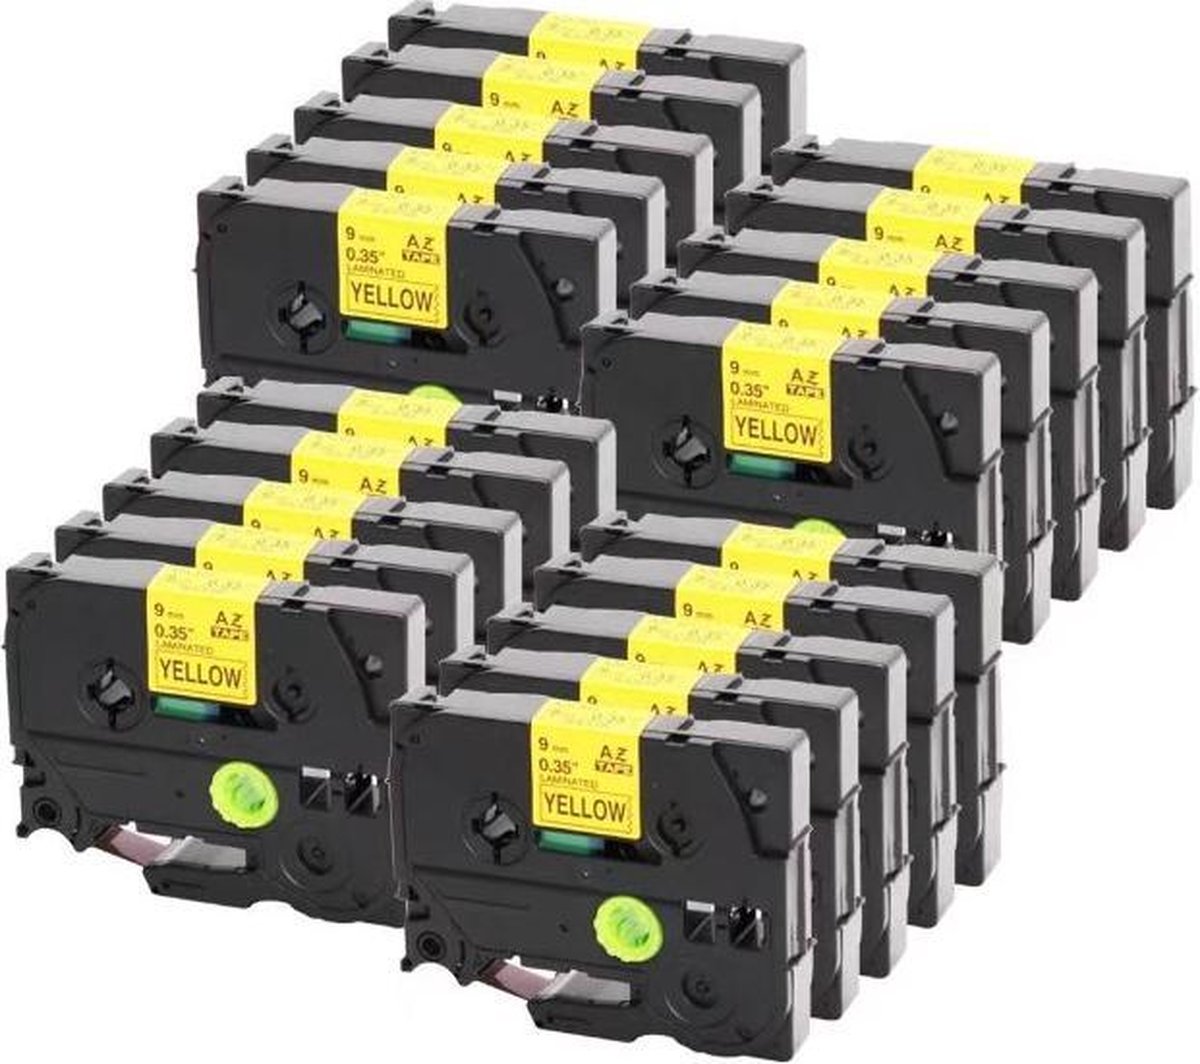 20 Roll Compatible voor Brother TZe-621 / TZ-621 Zwart op Geel Label Tapes voor P-touch GL-H105 GL-200 PT-1080 PTE-550WVP, PT-1160, PT-1170, PT-1180 Label Printer / 9mm x 8m